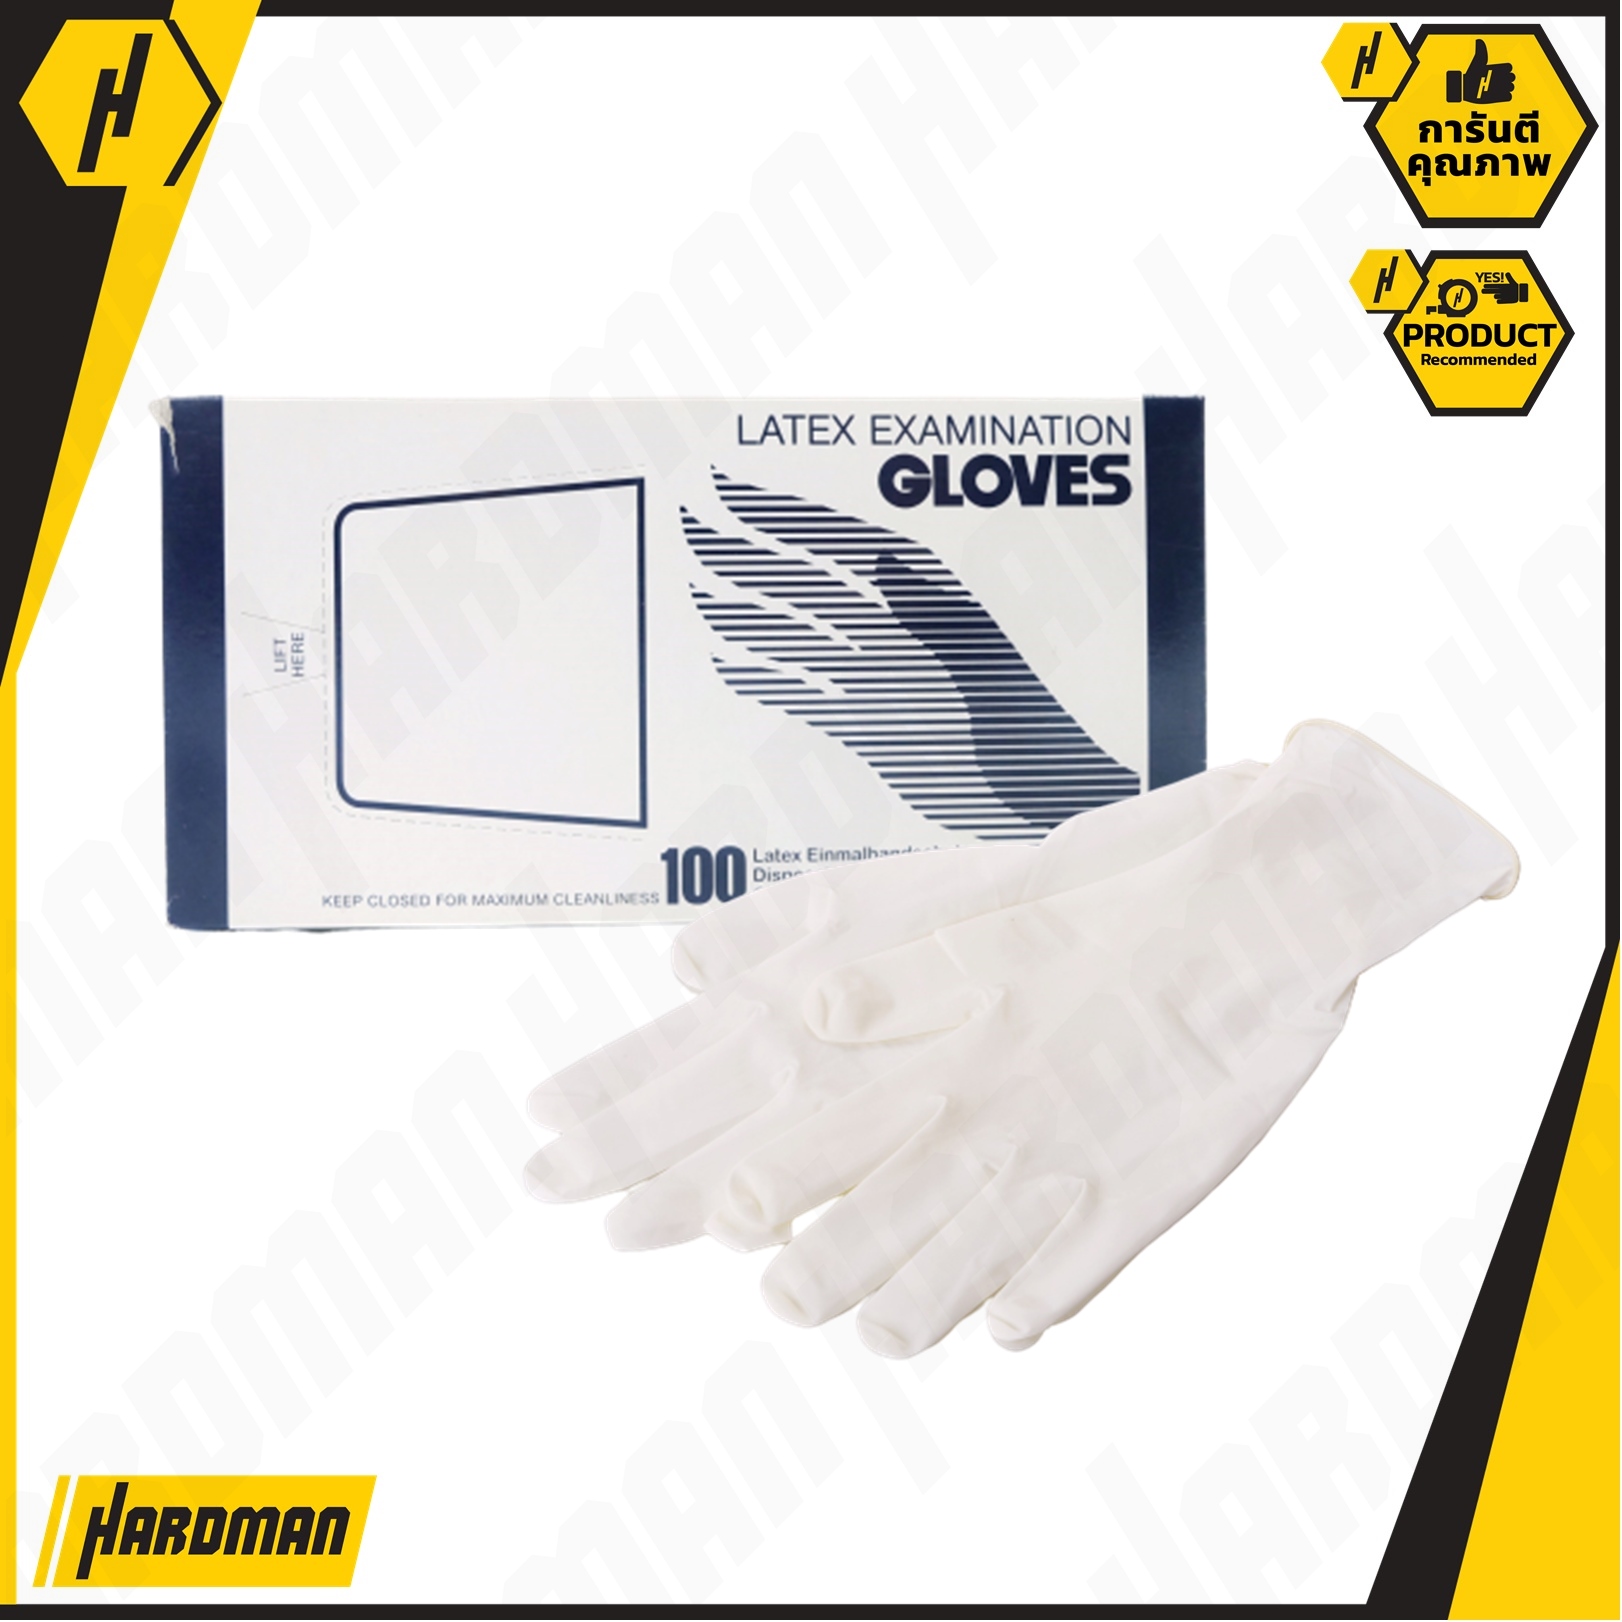 ถุงมือ แพทย์ มีแป้ง สีขาว ไซร์M  (100 ชิ้น/กล่อง) Latex Examination Gloves